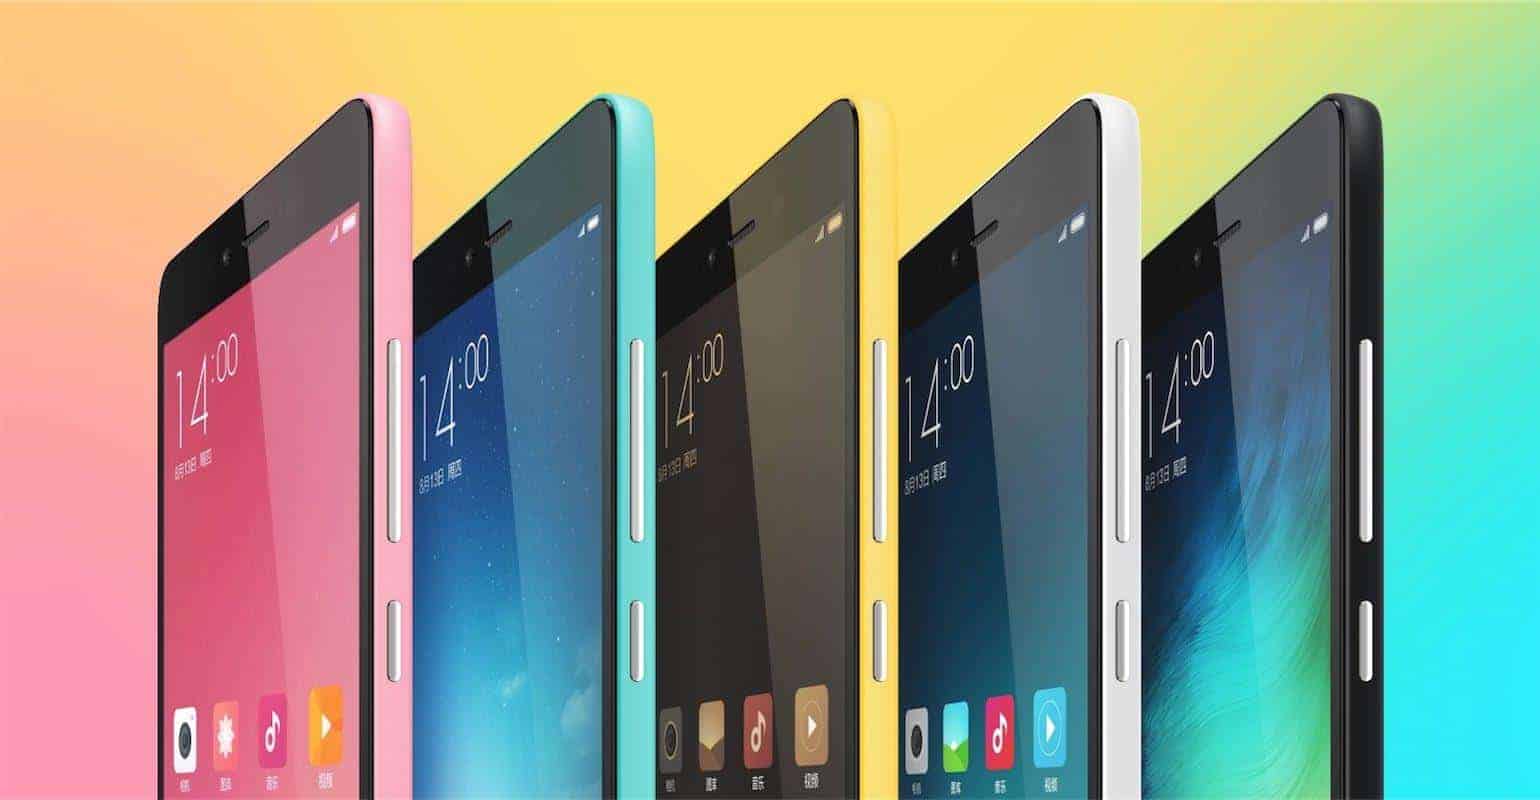 Xiaomi Redmi Note 2 kopen kan vanaf deze week in verschillende webshops vanaf €155